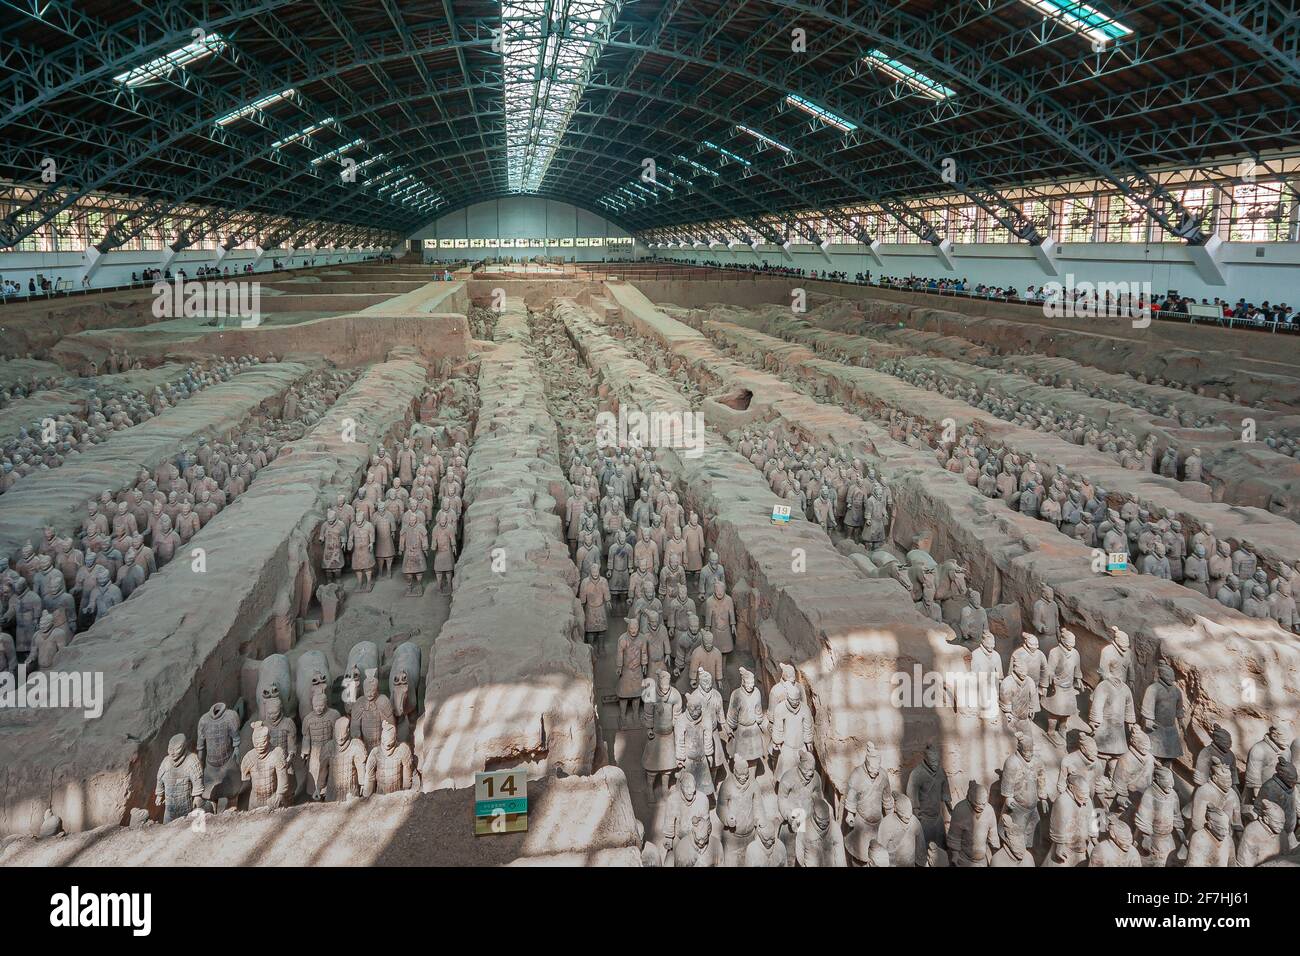 Xian, China - 1. Mai 2010: Terrakotta-Armee von Qin Shi Huang. Riesiges Hallendach über beigefarbenen Schottergrabungen mit Hunderten von Soldaten- und Pferdestatuen. Stockfoto